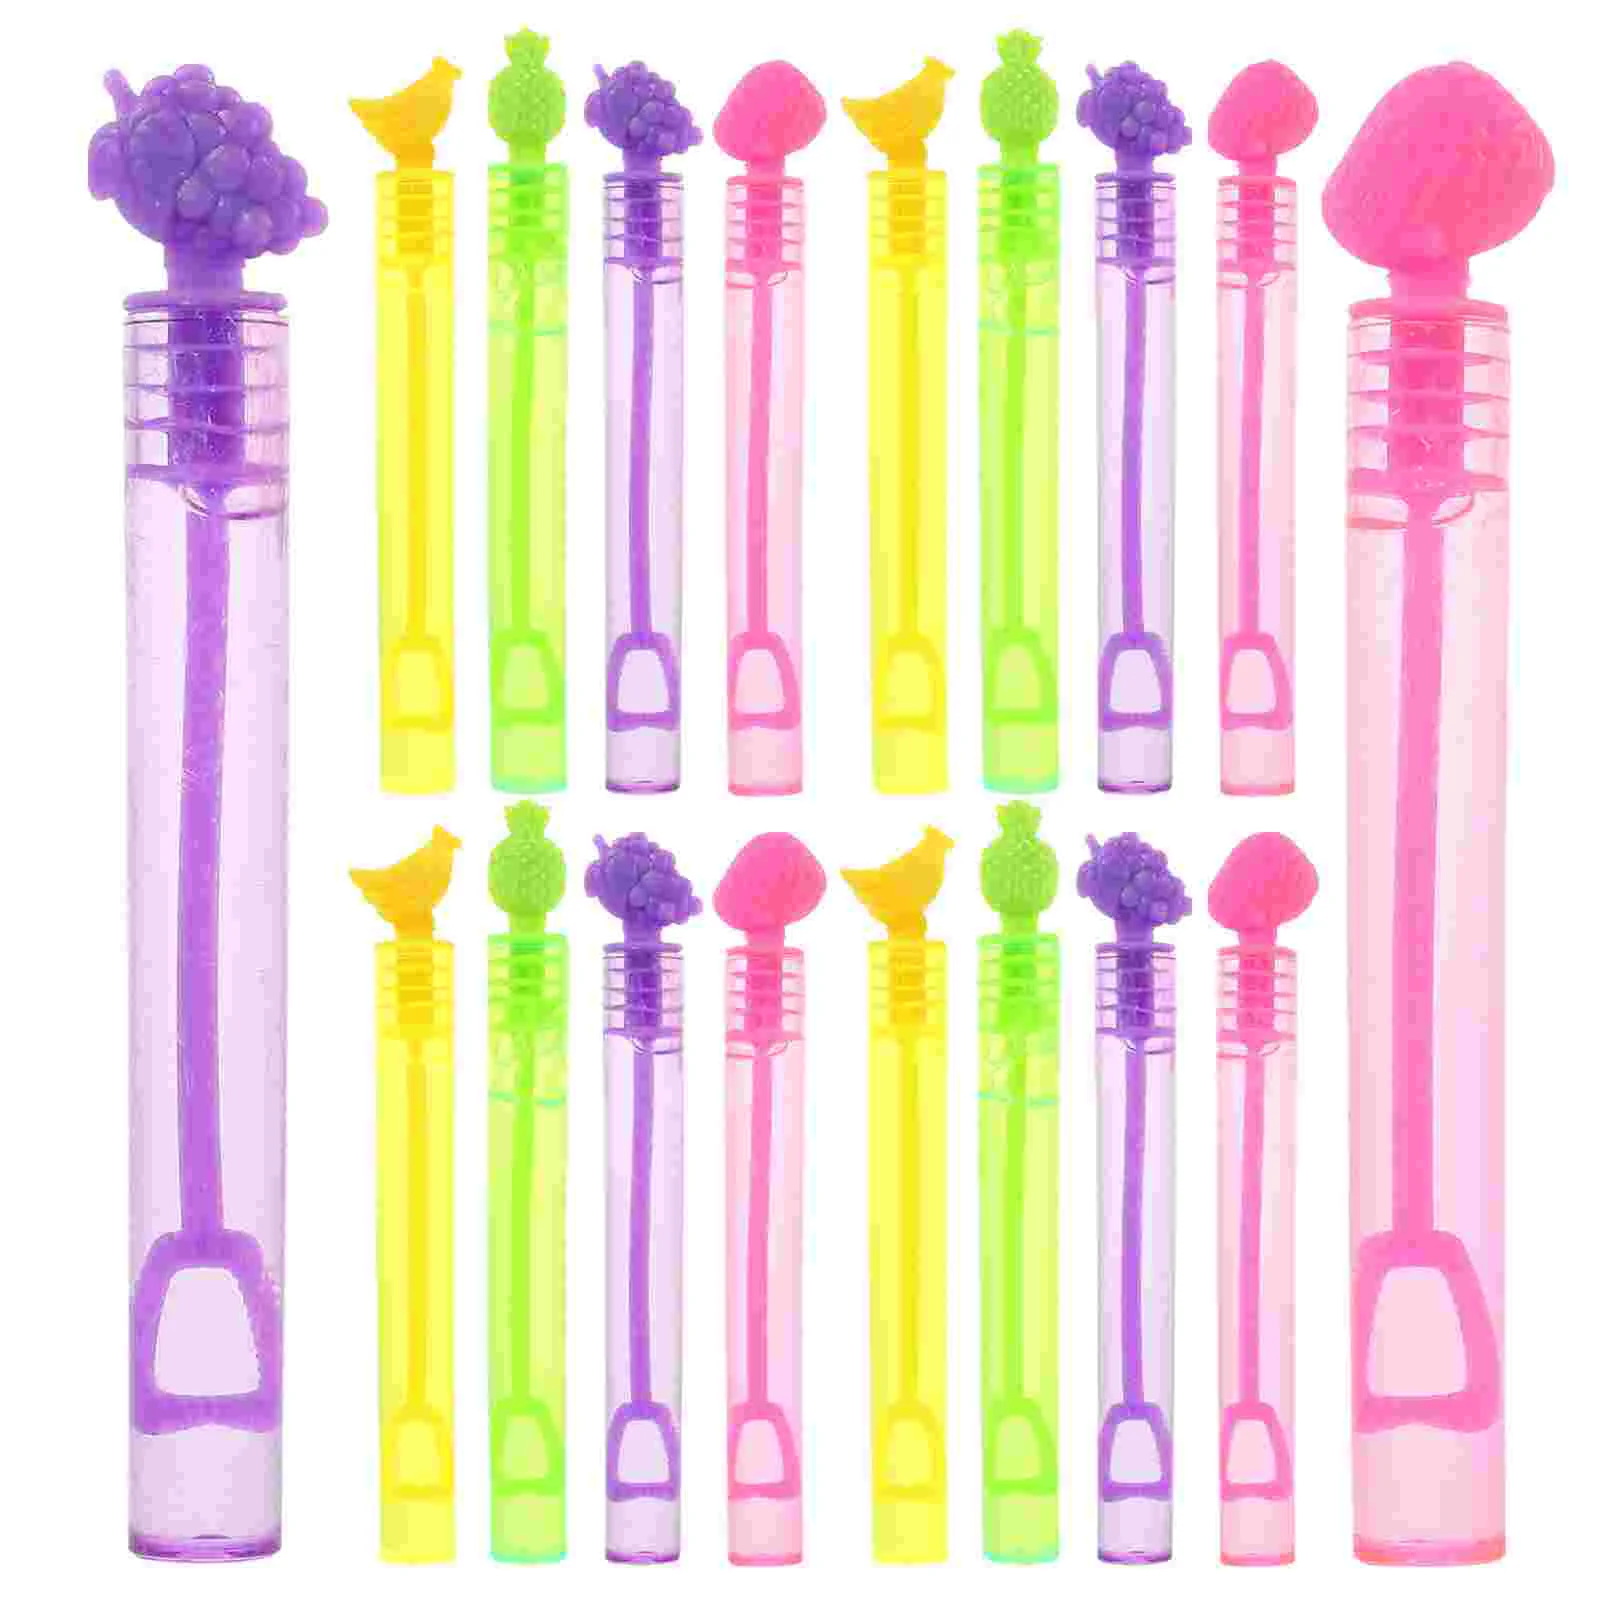 

Испытательная трубка, пузырьковая палочка, Мини палочки, пузырьки, разноцветная палочка для детей, игрушка, звезда, дизайнерские игрушки, забавный производитель